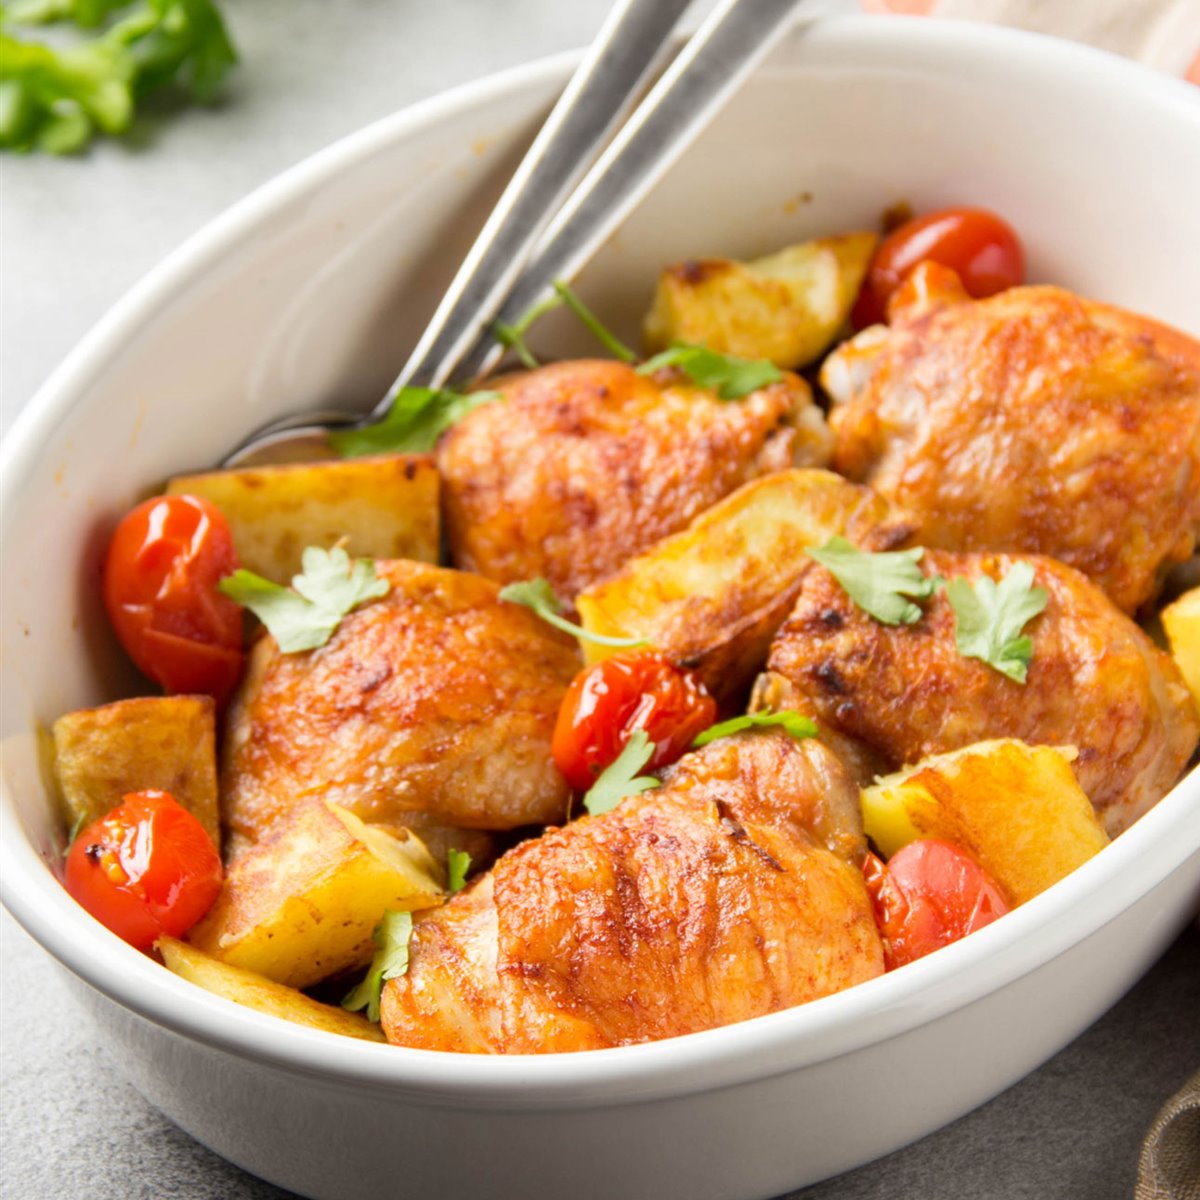 Pollo al horno turco de Karlos Arguiñano, con patatas, cebolla y tomates